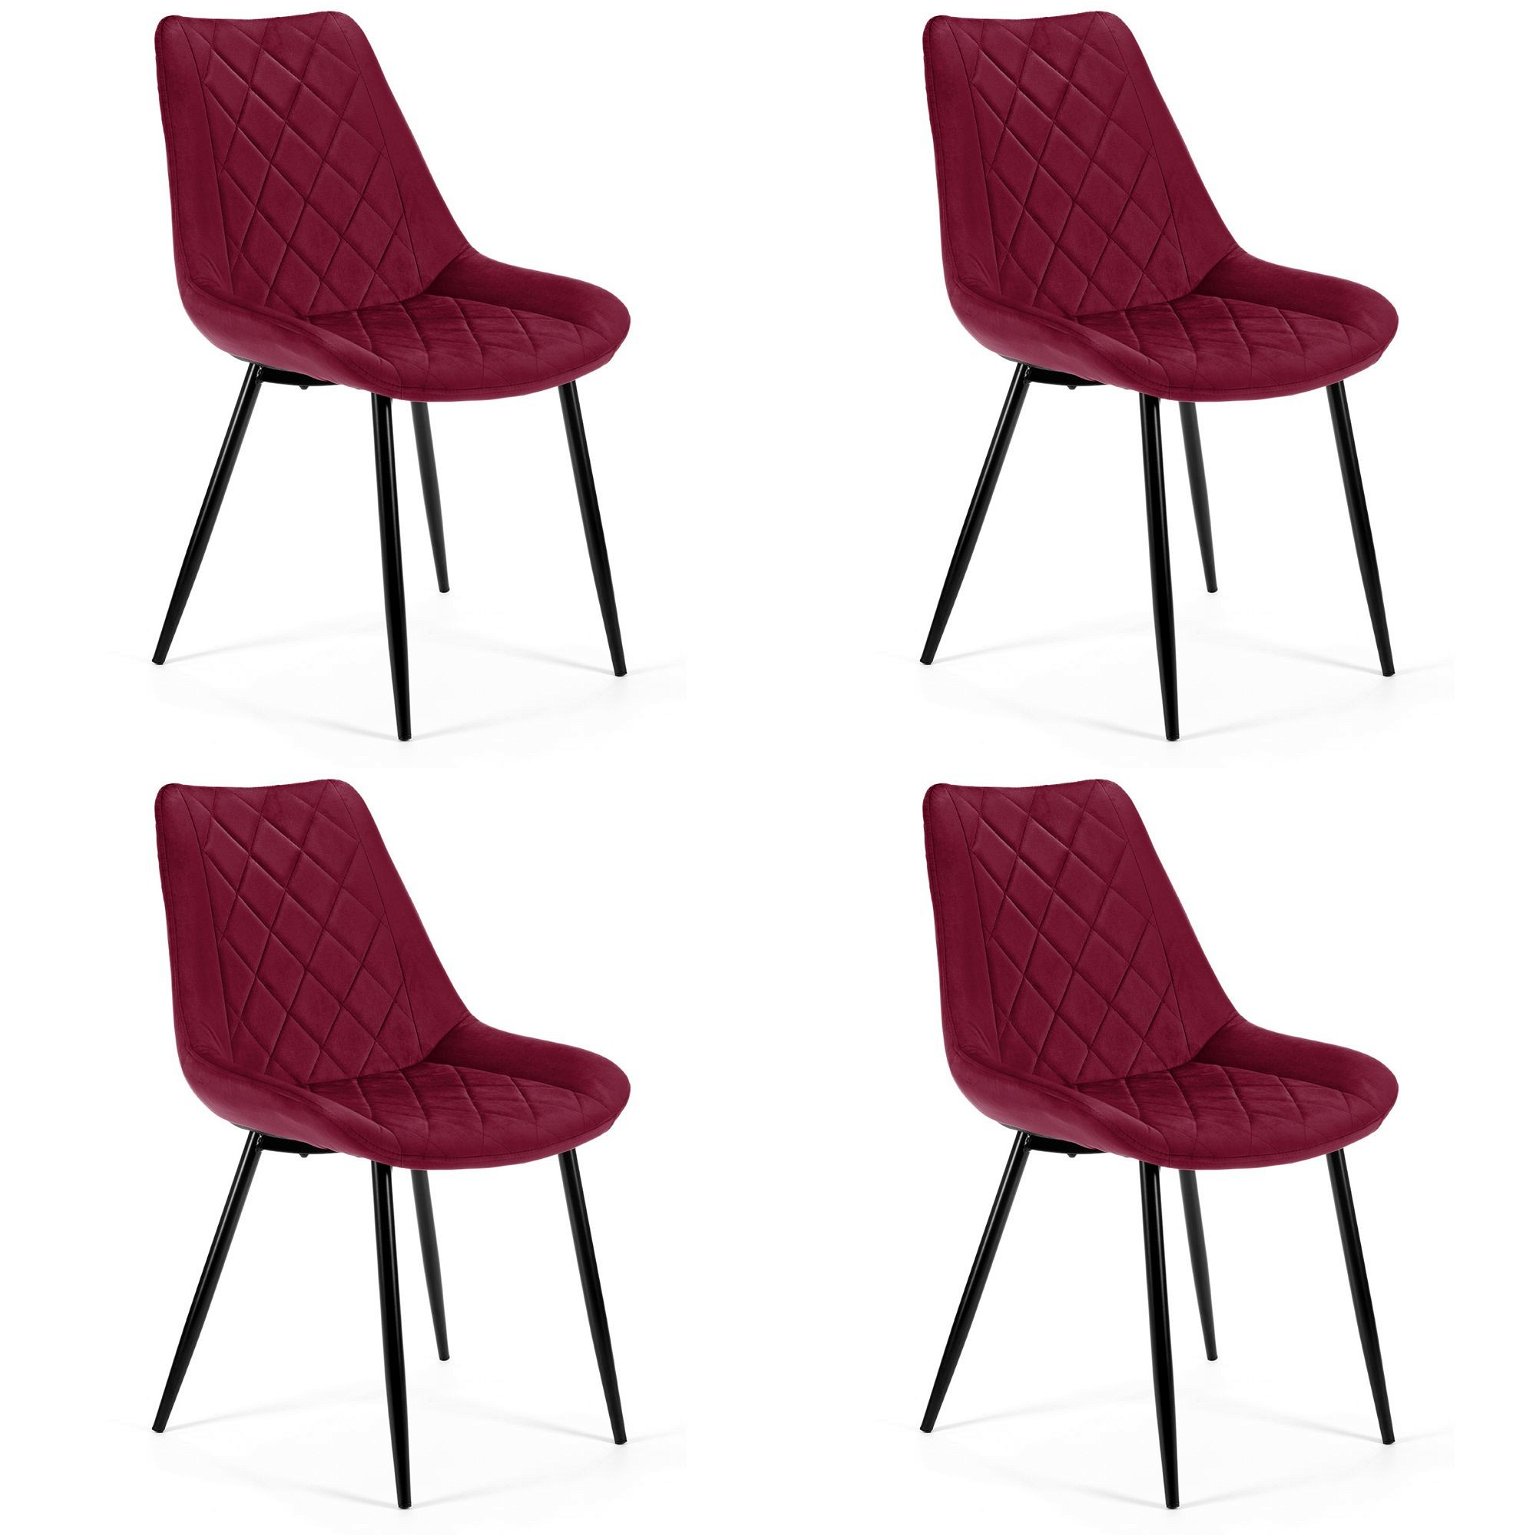 4-ių kėdžių komplektas SJ.0488, tamsiai raudona - 2